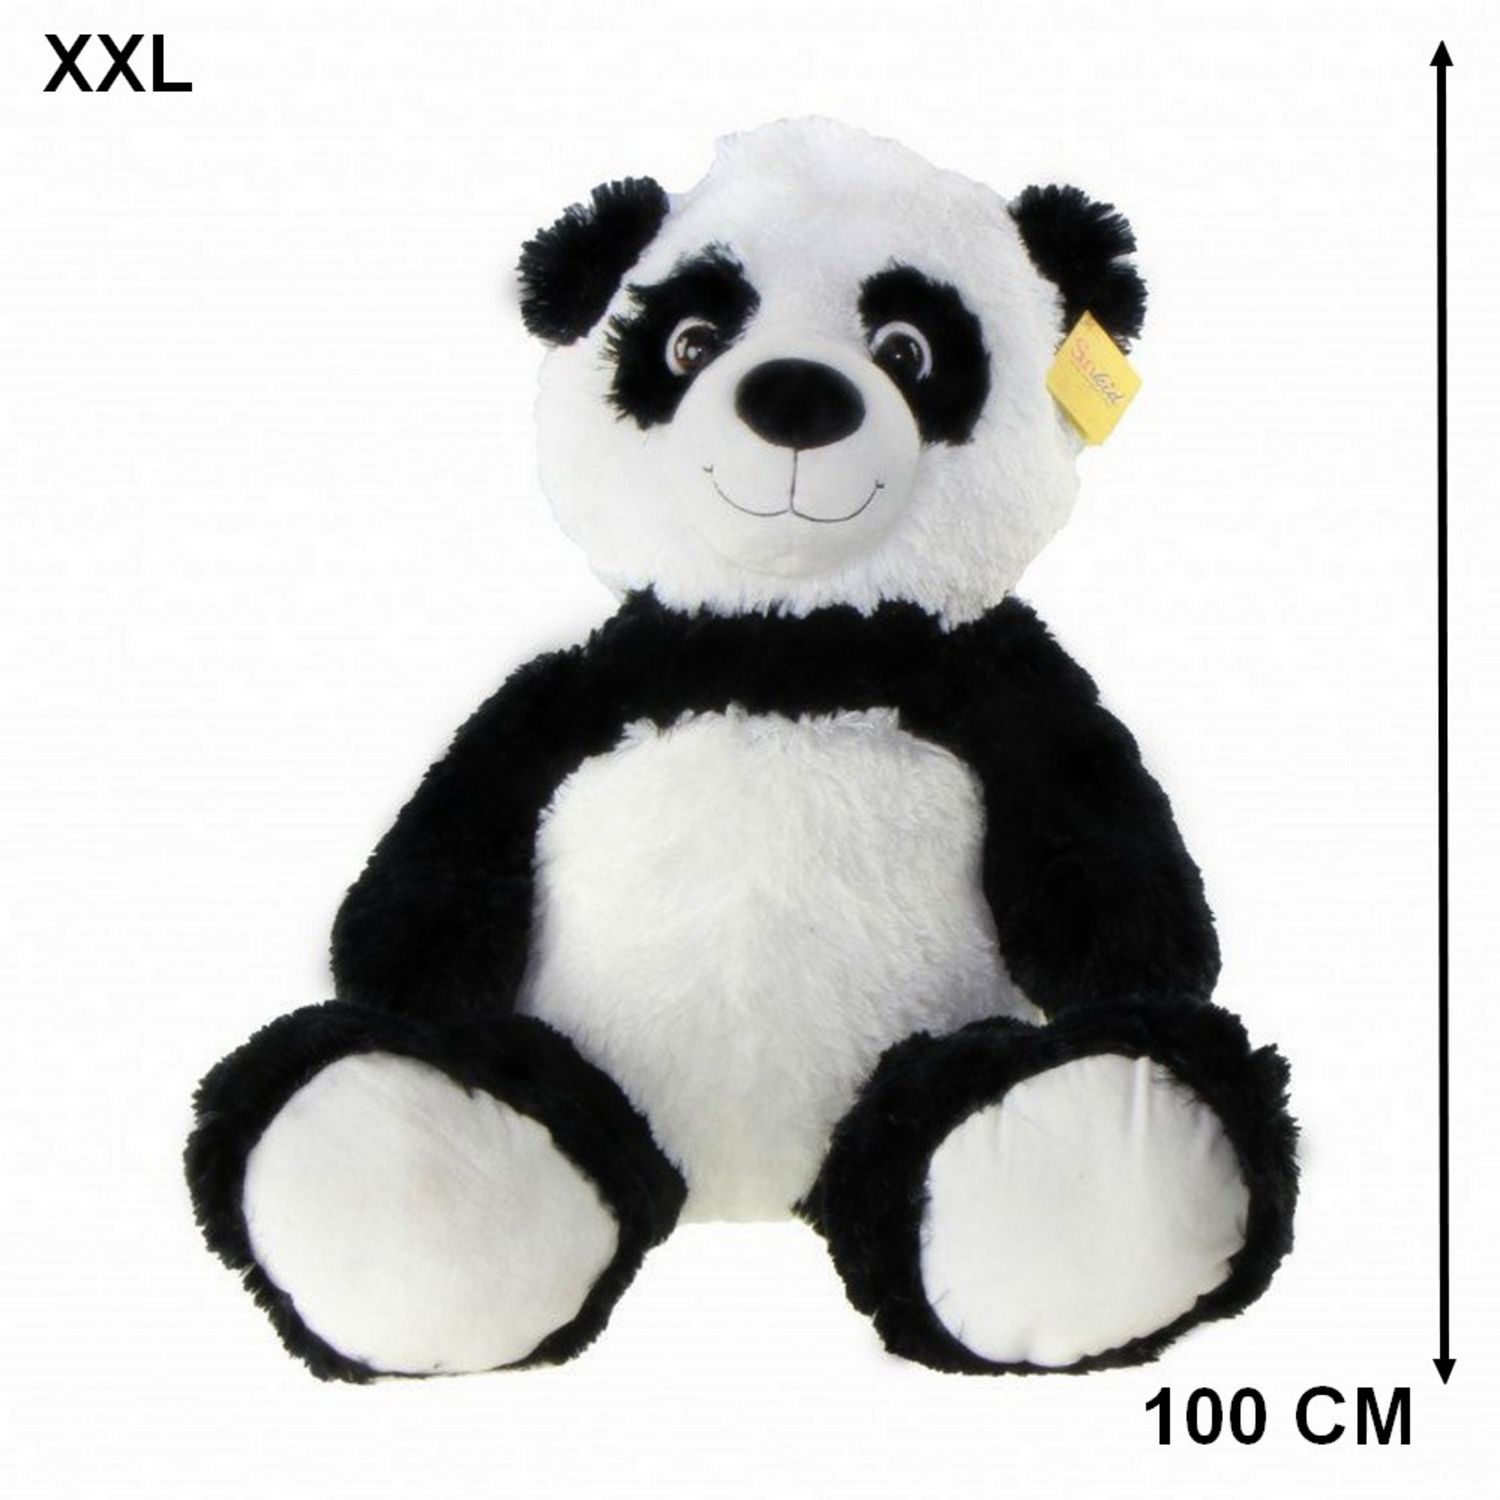 Peluche Panda XXL 70 cm : Peluches géantes